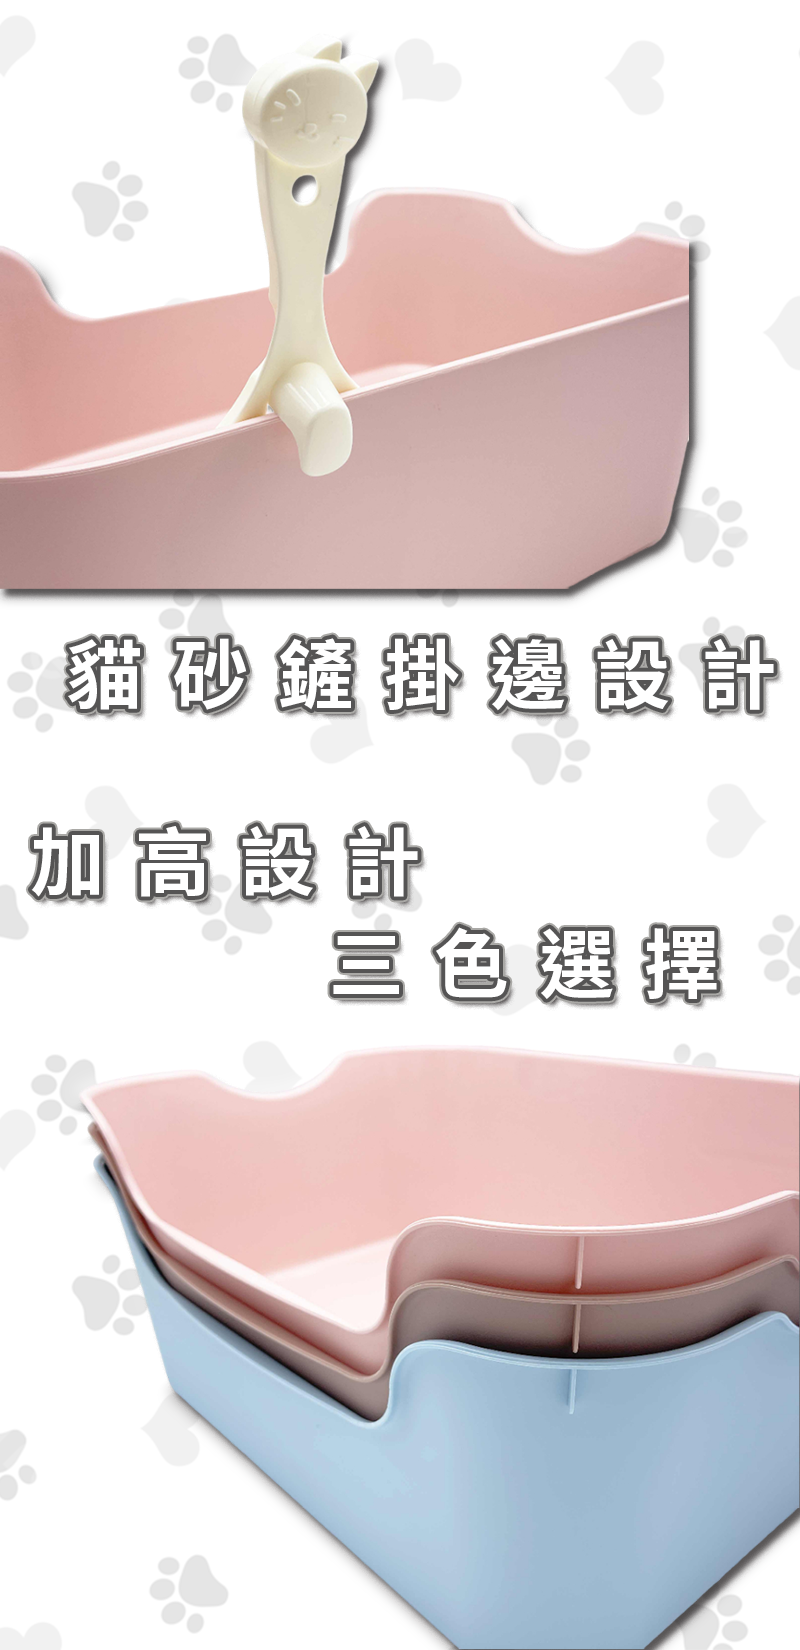 【高精寵物】開放式貓砂盆 貓砂盆 摩卡色/天空藍/櫻花粉任選